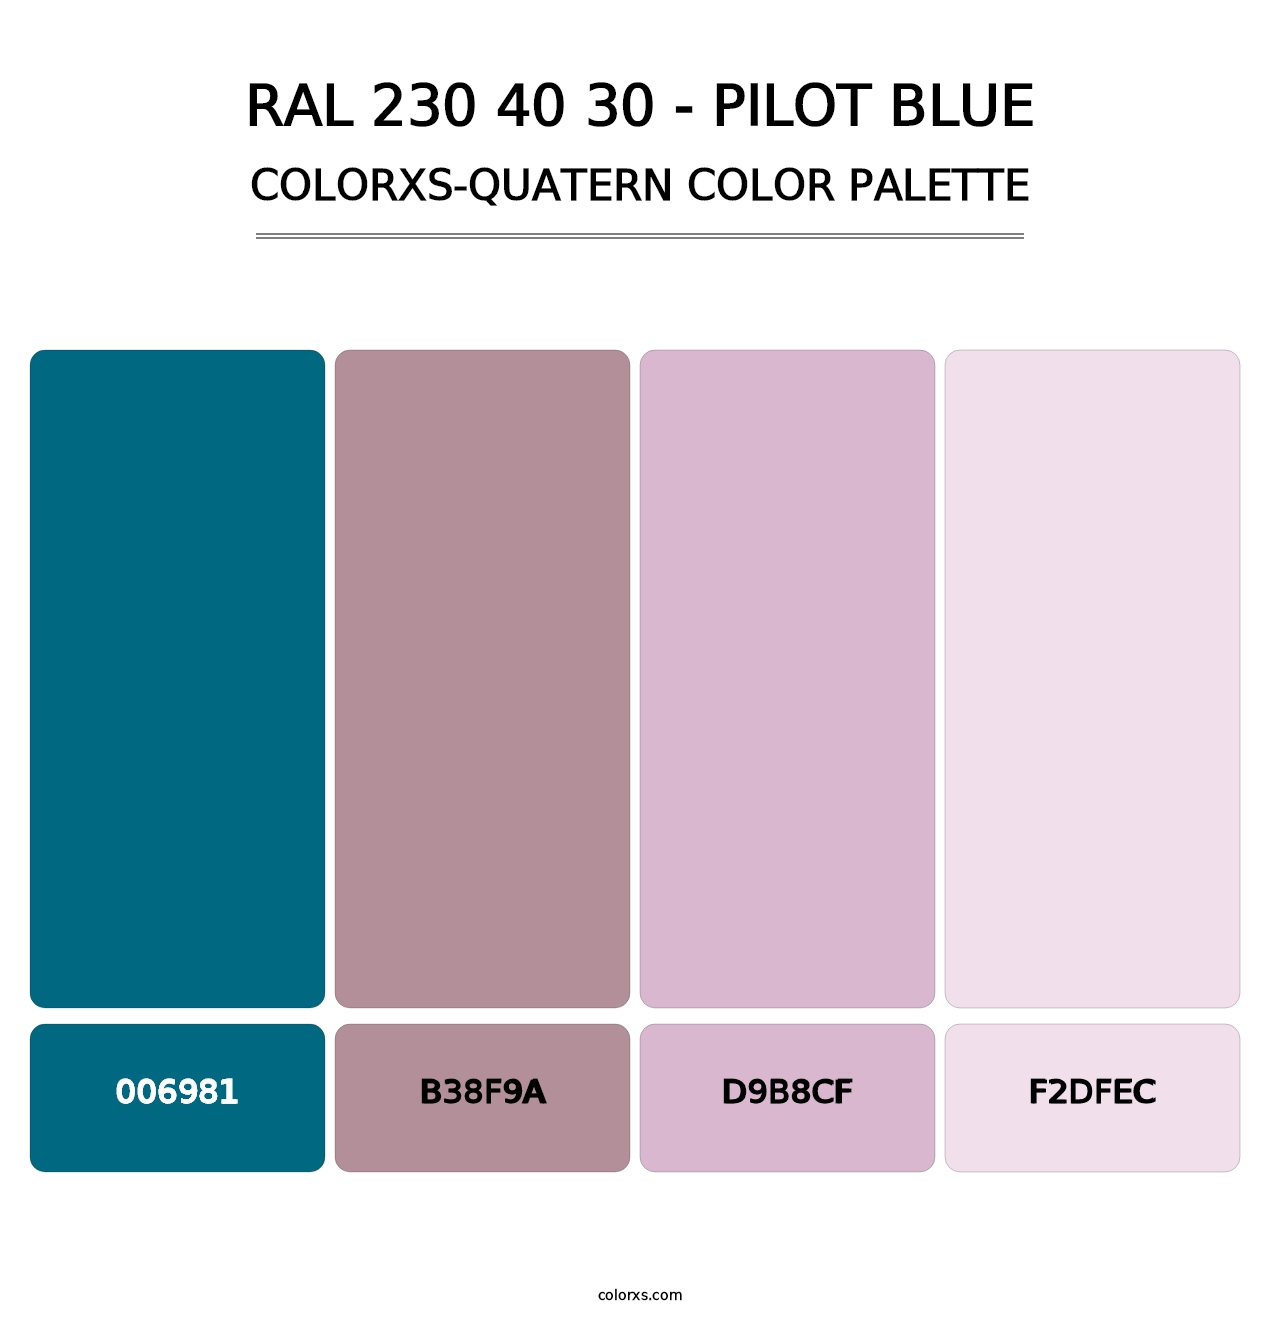 RAL 230 40 30 - Pilot Blue - Colorxs Quatern Palette